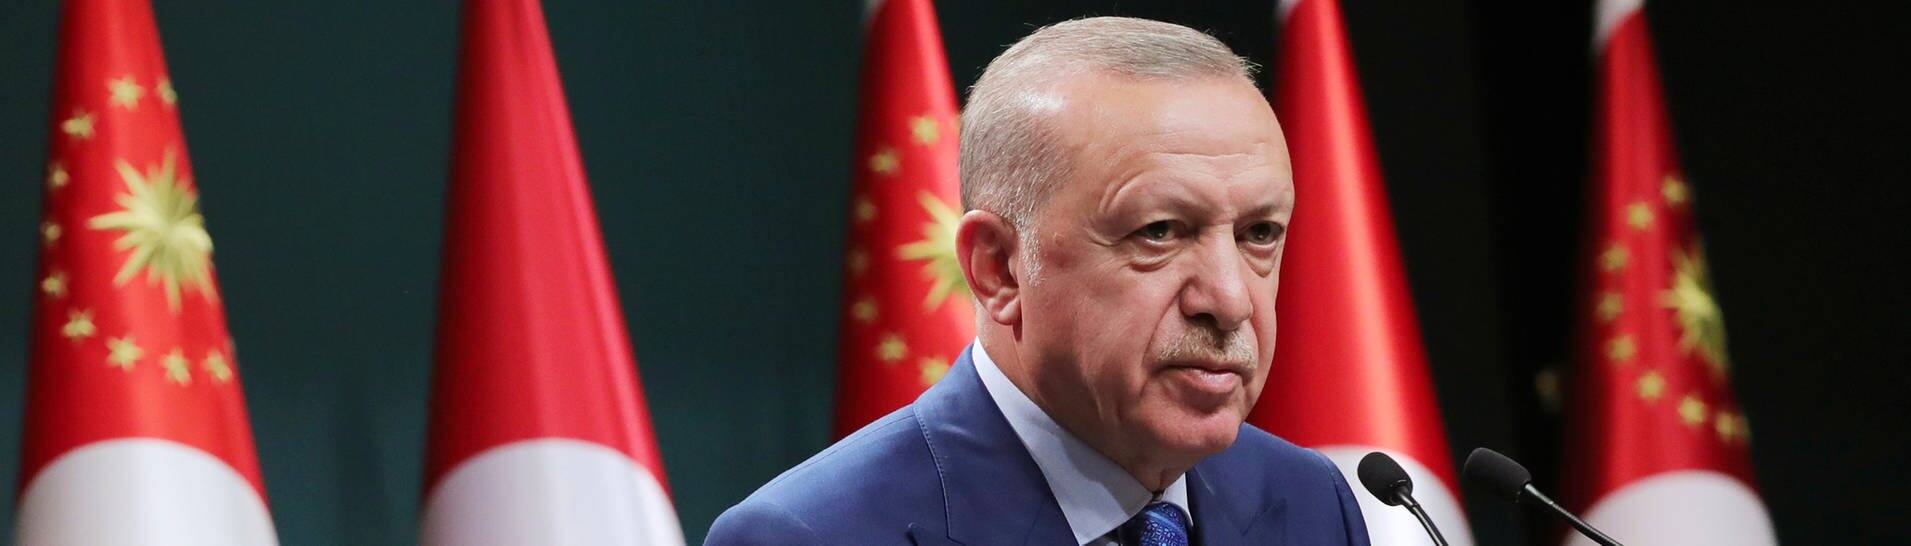 Recep Tayyip Erdogan, Staatspräsident der Türkei, spricht während einer im Fernsehen übertragenen Ansprache nach einer Kabinettssitzung.  (Foto: dpa Bildfunk, picture alliance/dpa/Turkish Presidency/AP | Uncredited)